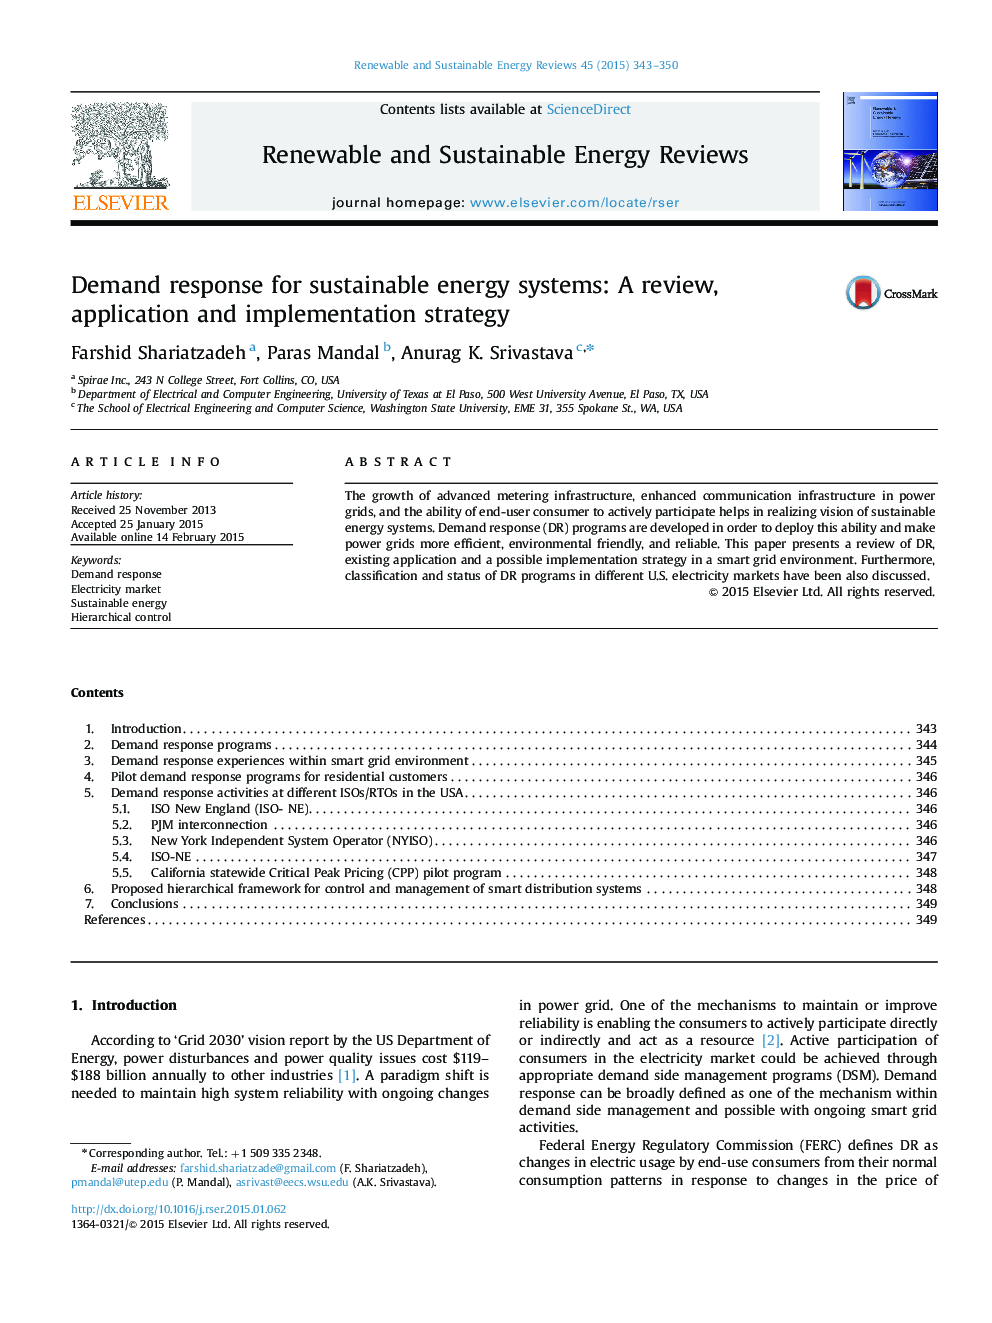 پاسخ تقاضا برای سیستم های انرژی پایدار: یک استراتژی بازبینی، کاربرد و پیاده سازی 